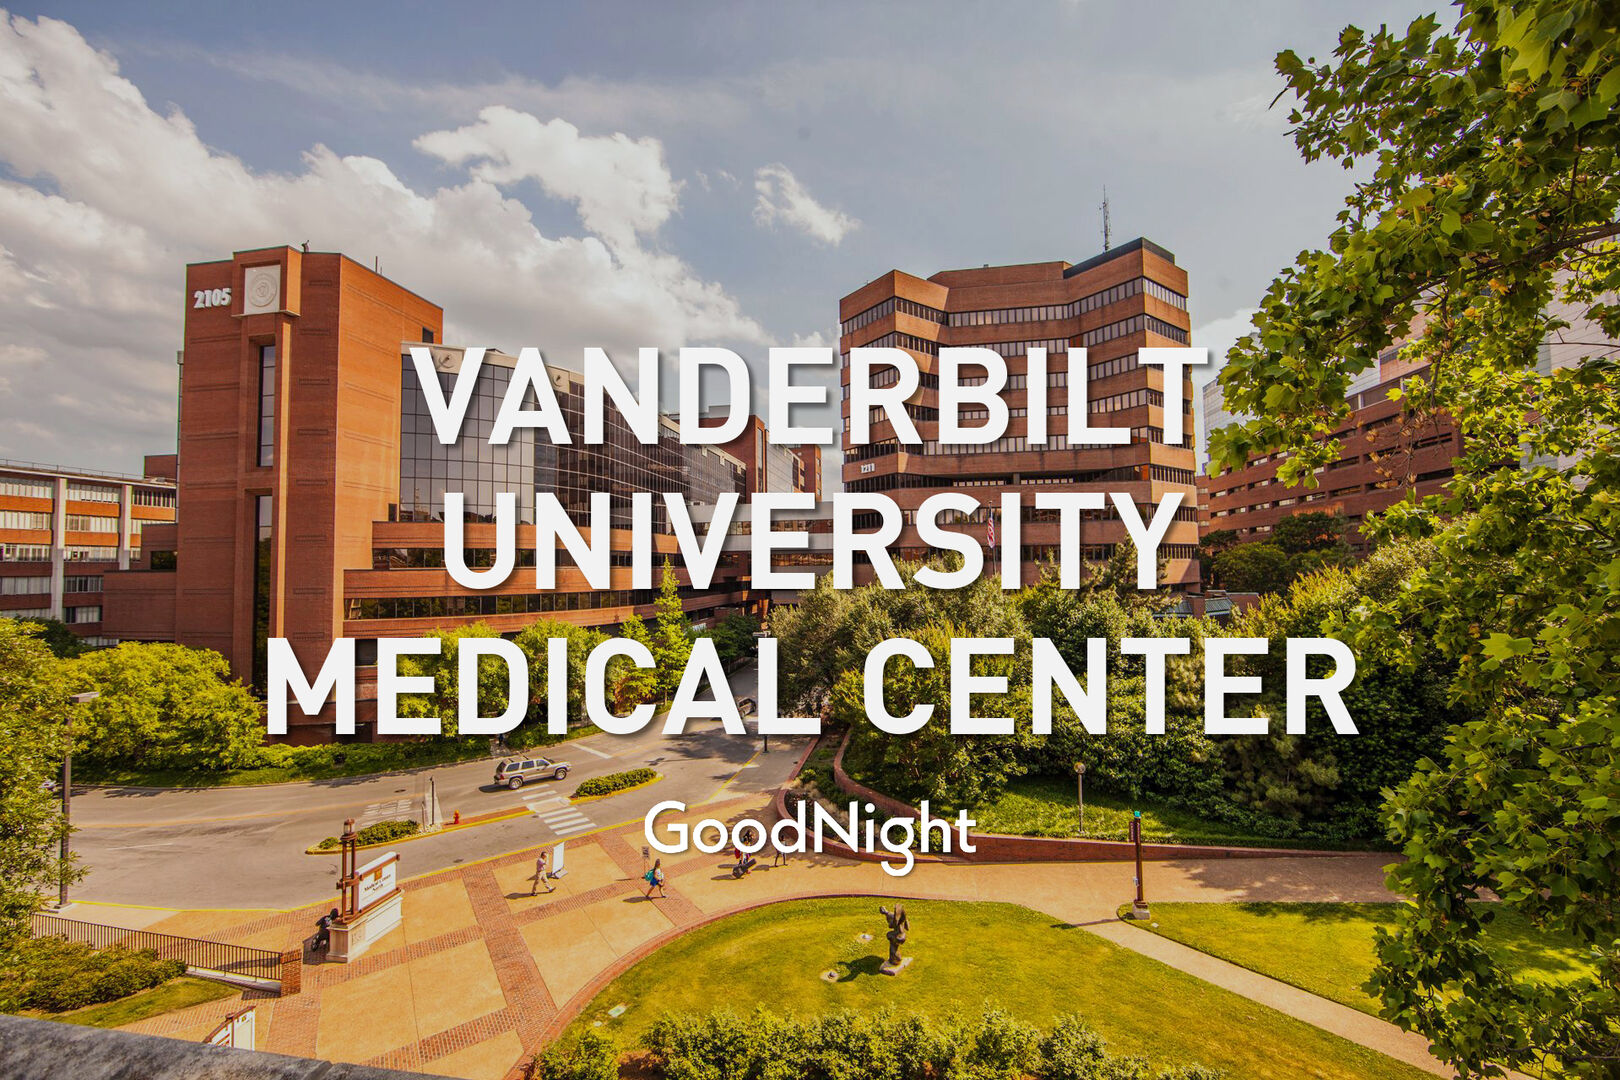 4 mins: Vanderbilt Medical Center